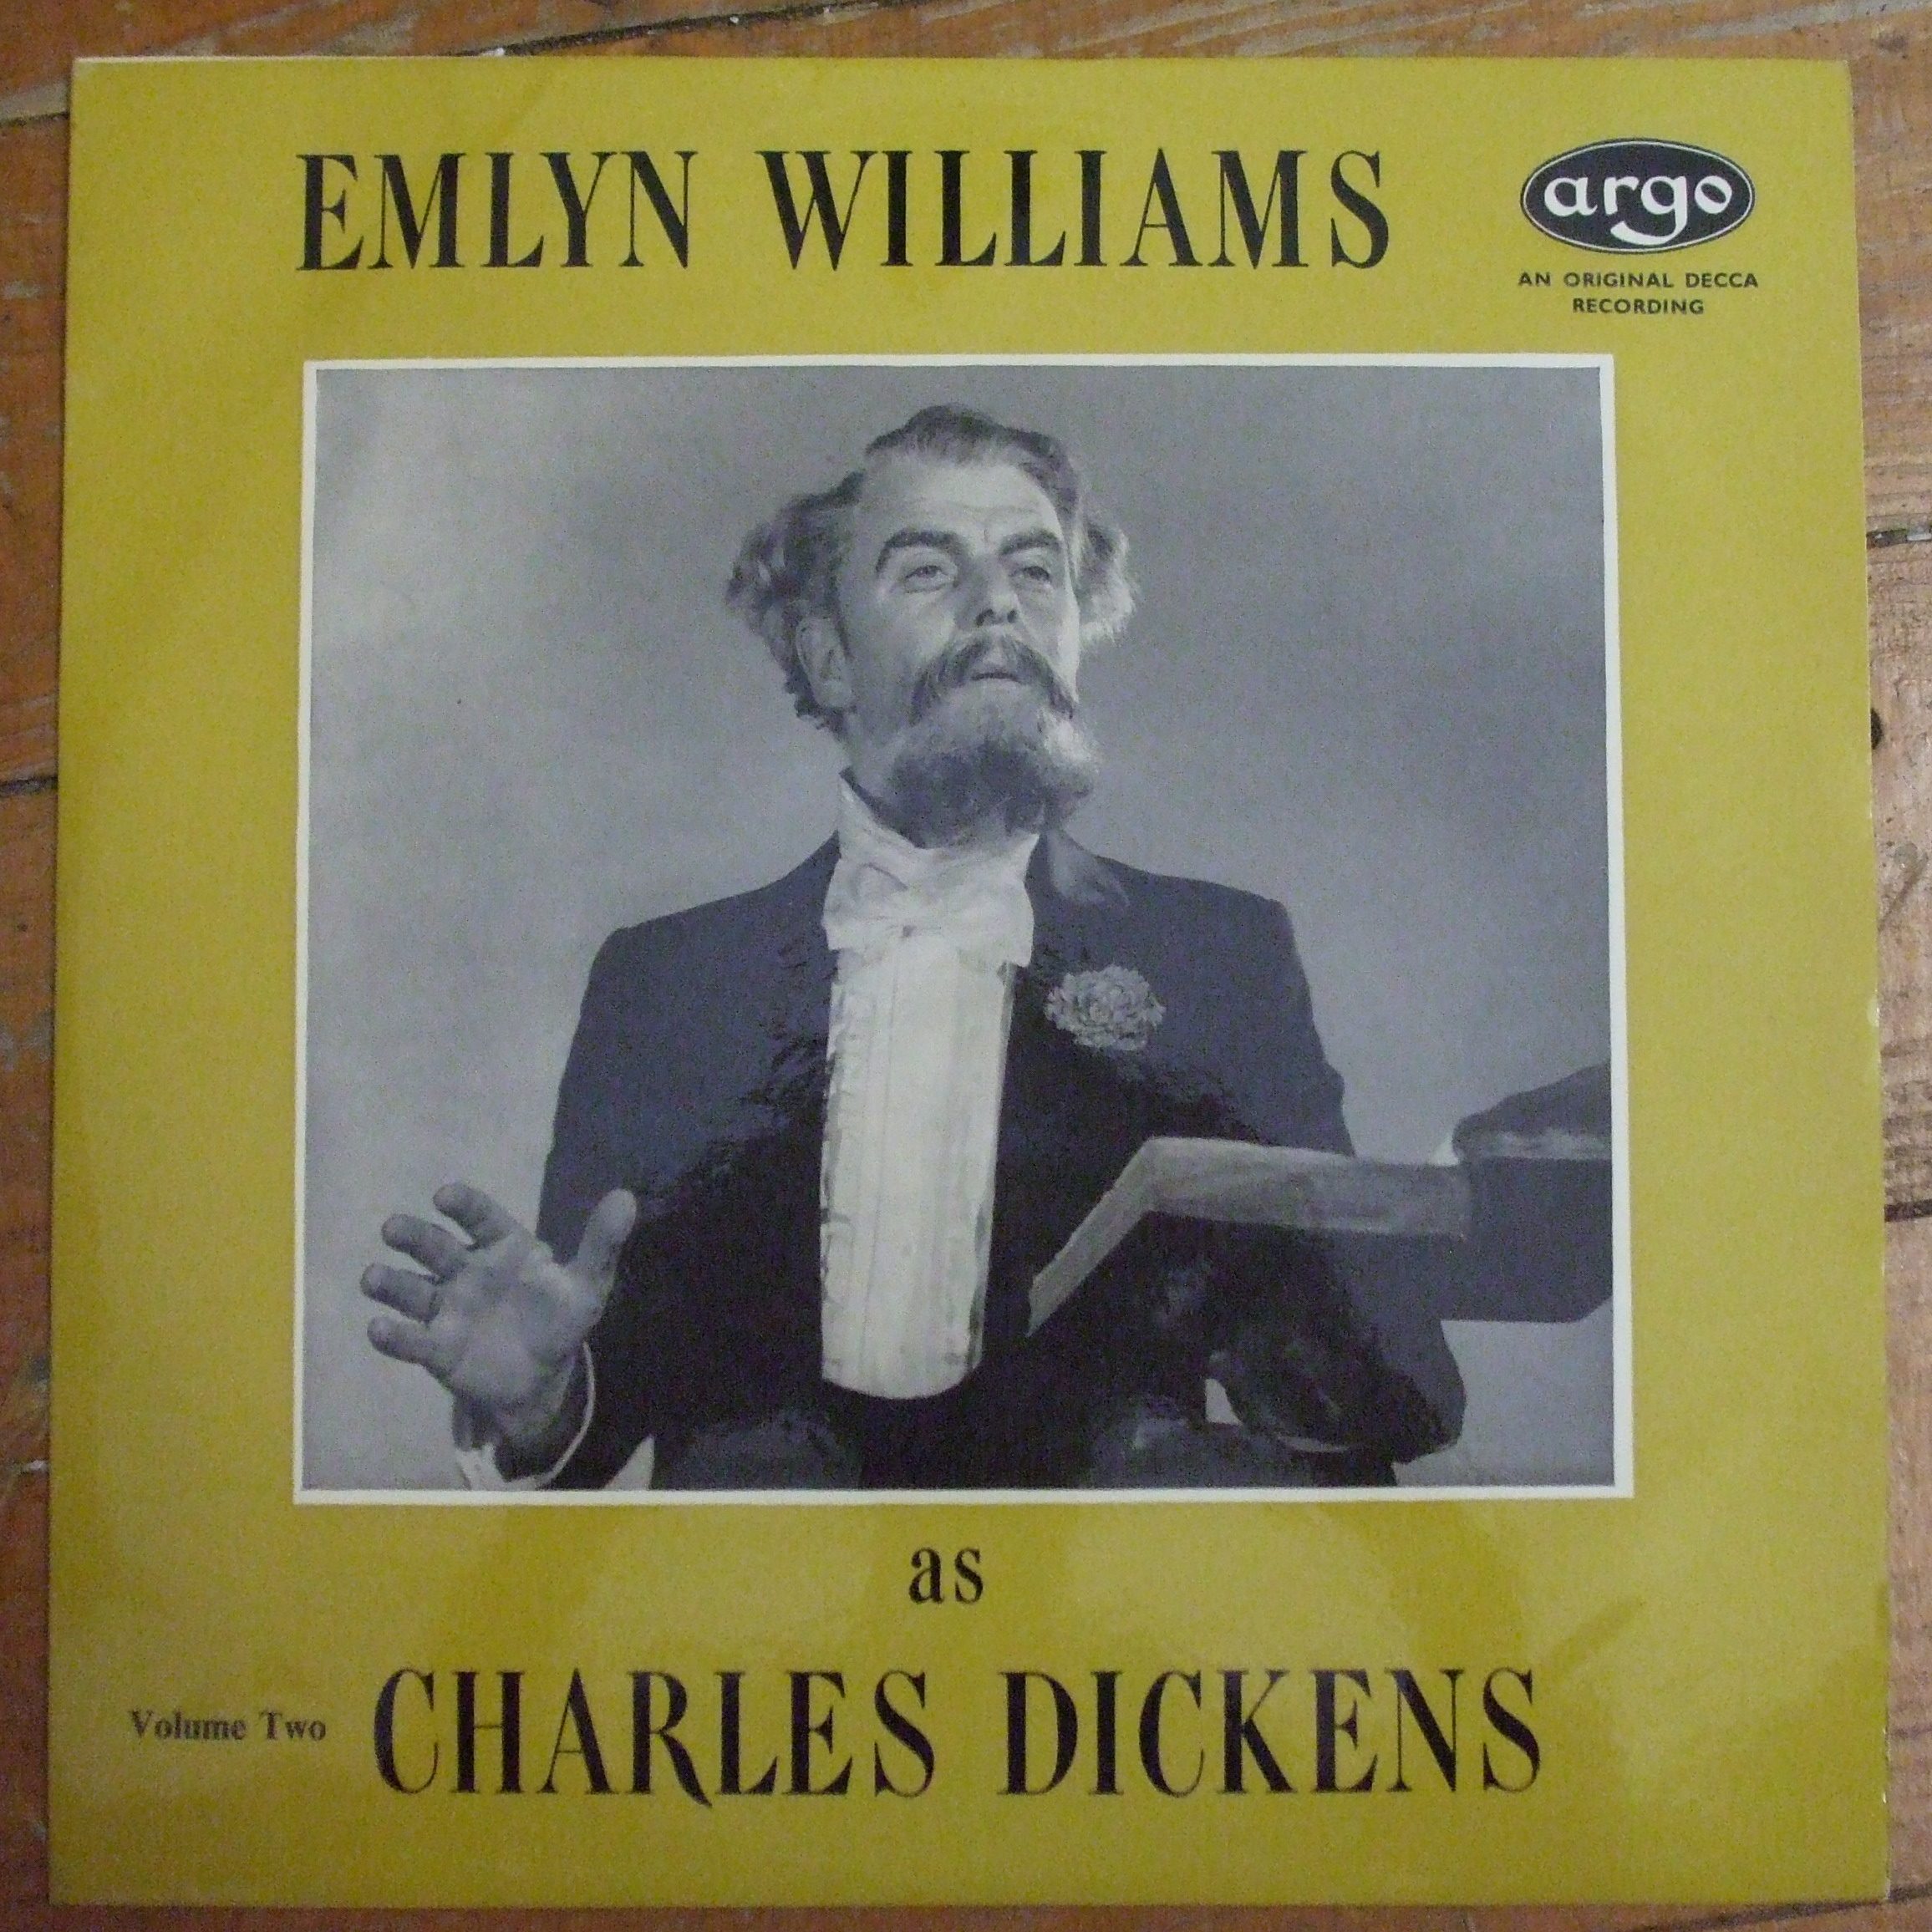 RG 231 Emlyn Williams as Charles Dickens Volume Two